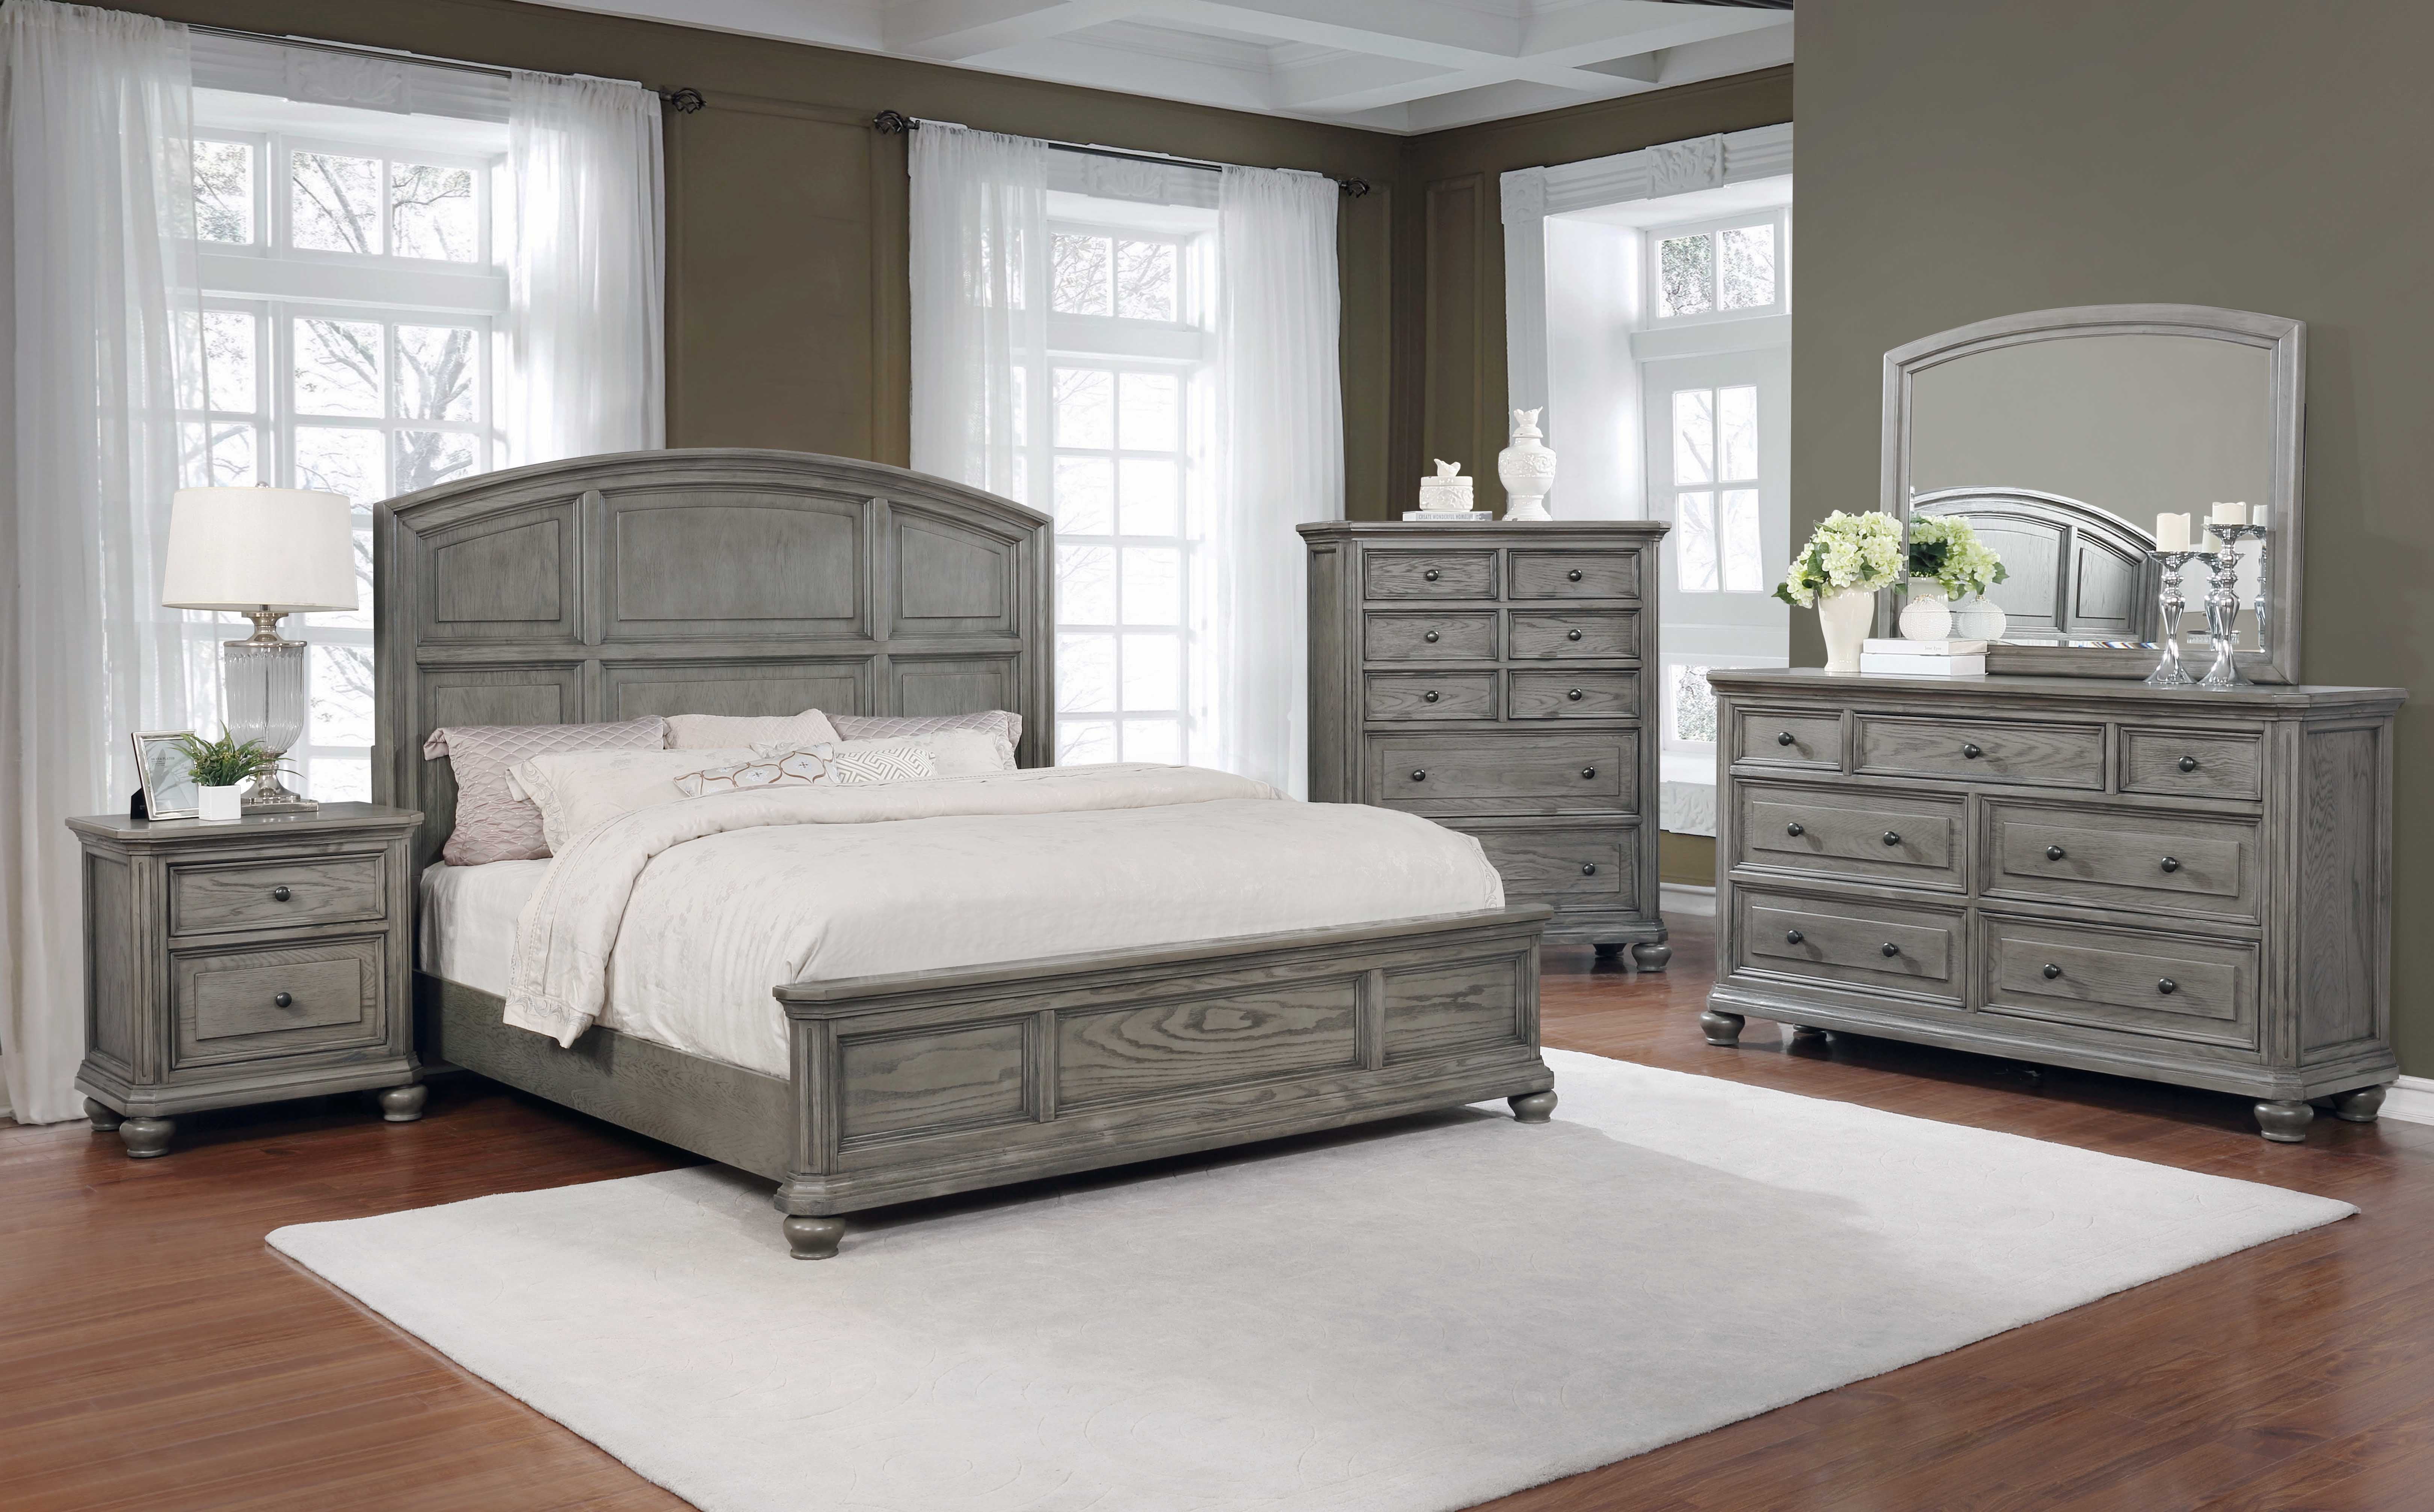 Best Master Furniture 5 Pcs Queen Bedroom Set in Grey